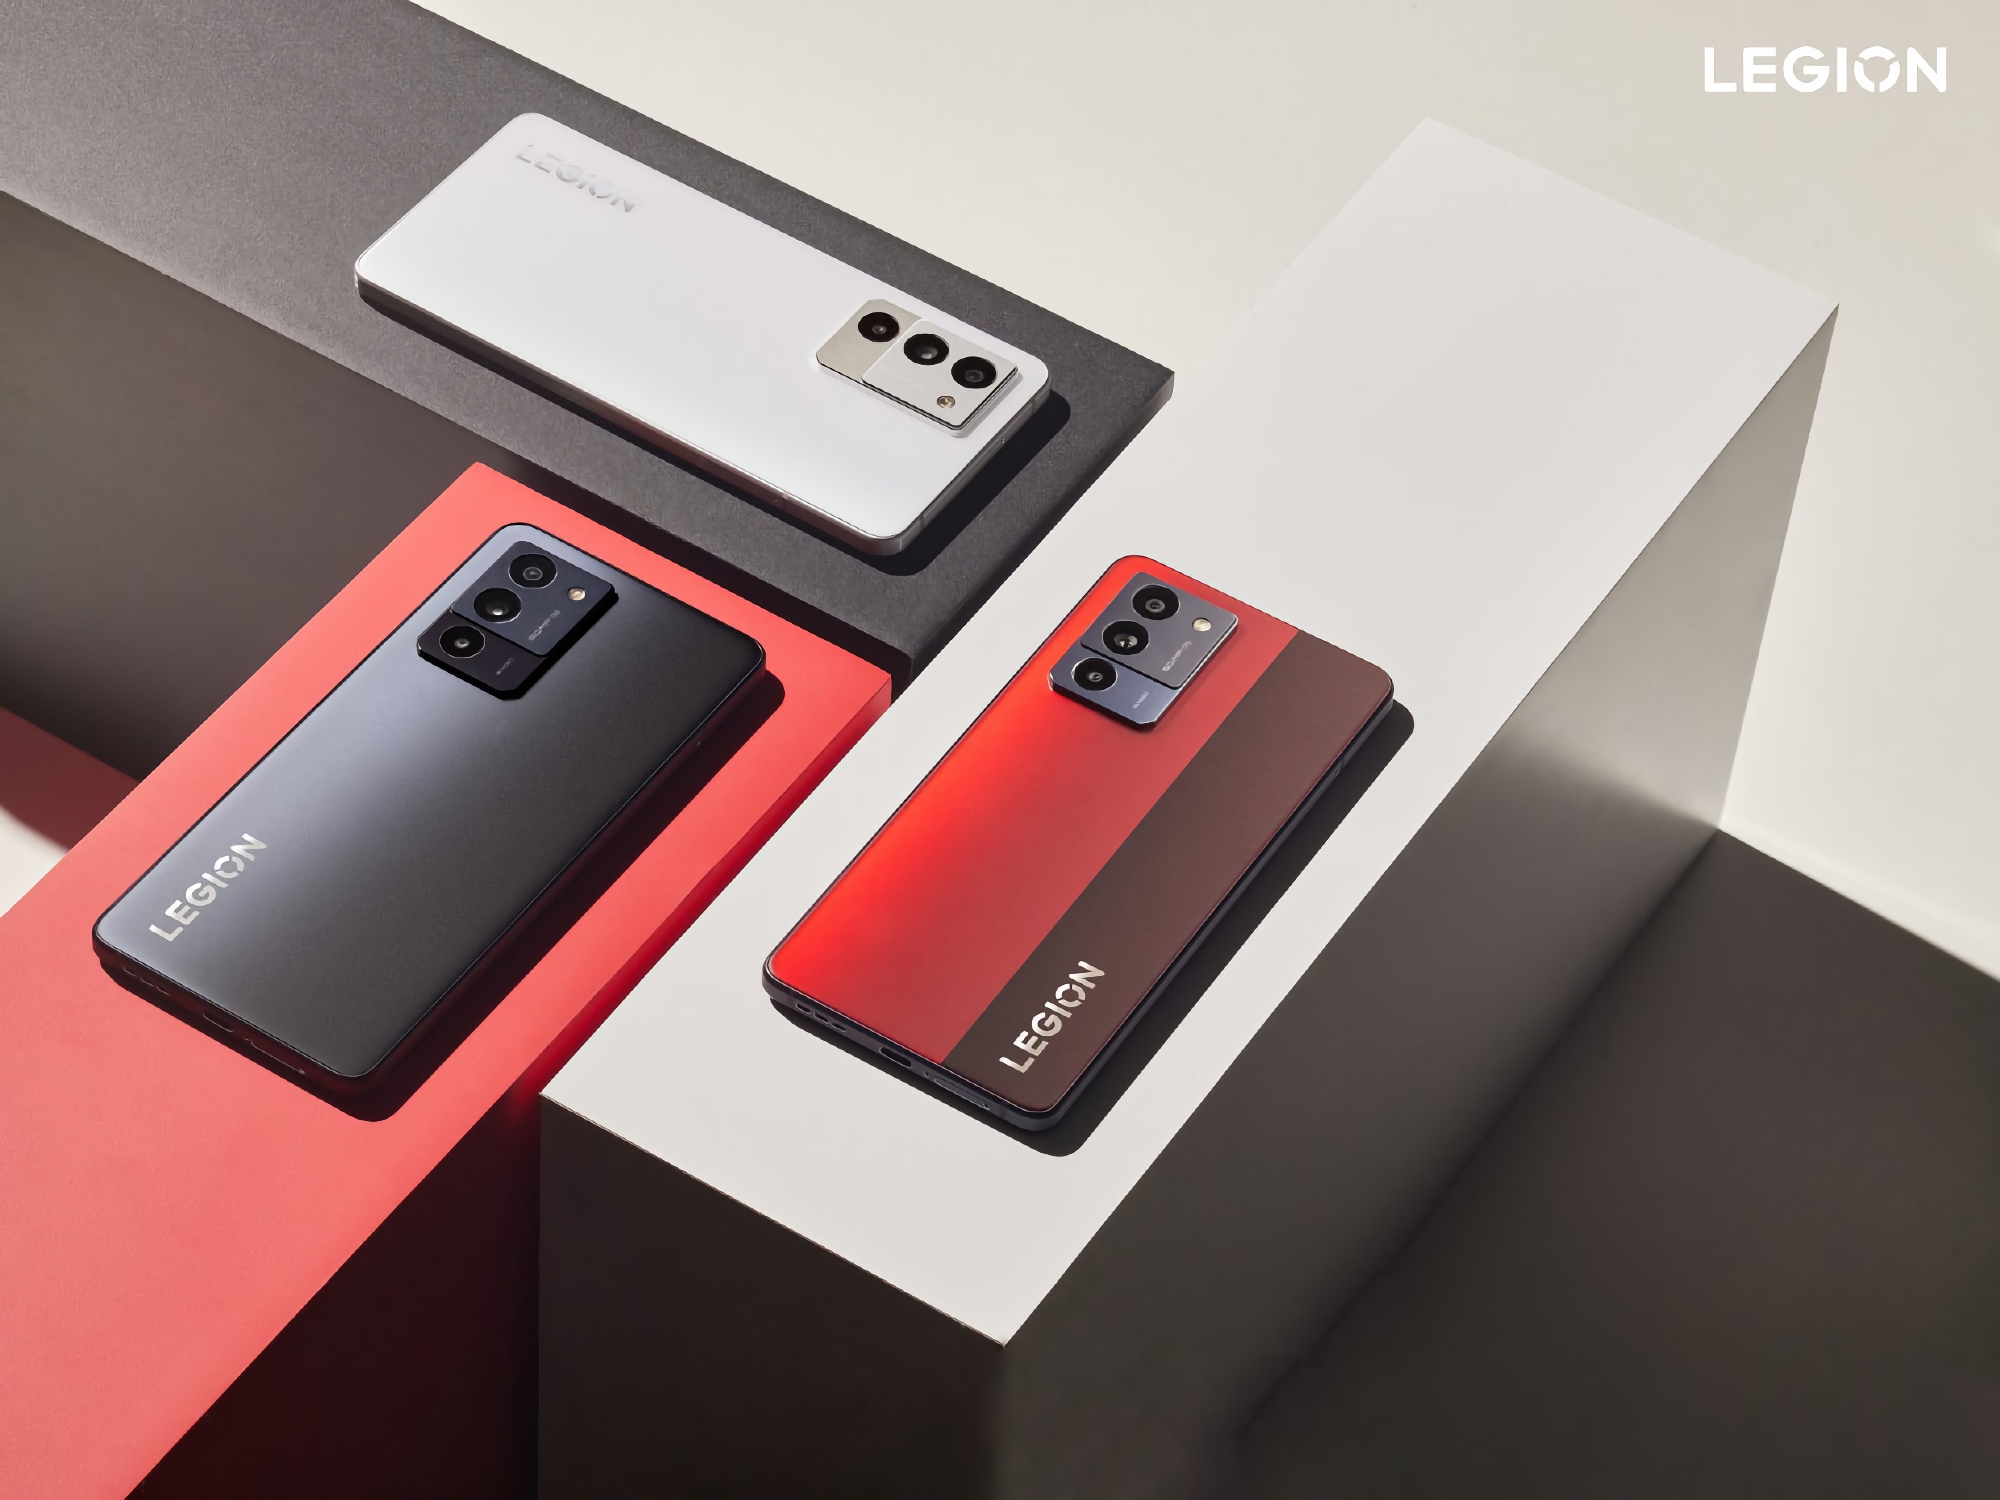 Інсайдер розсекретив зовнішній вигляд Lenovo Legion Y70: ігровий смартфон з чипом Snapdragon 8+ Gen1 та батареєю на 5000 мАг